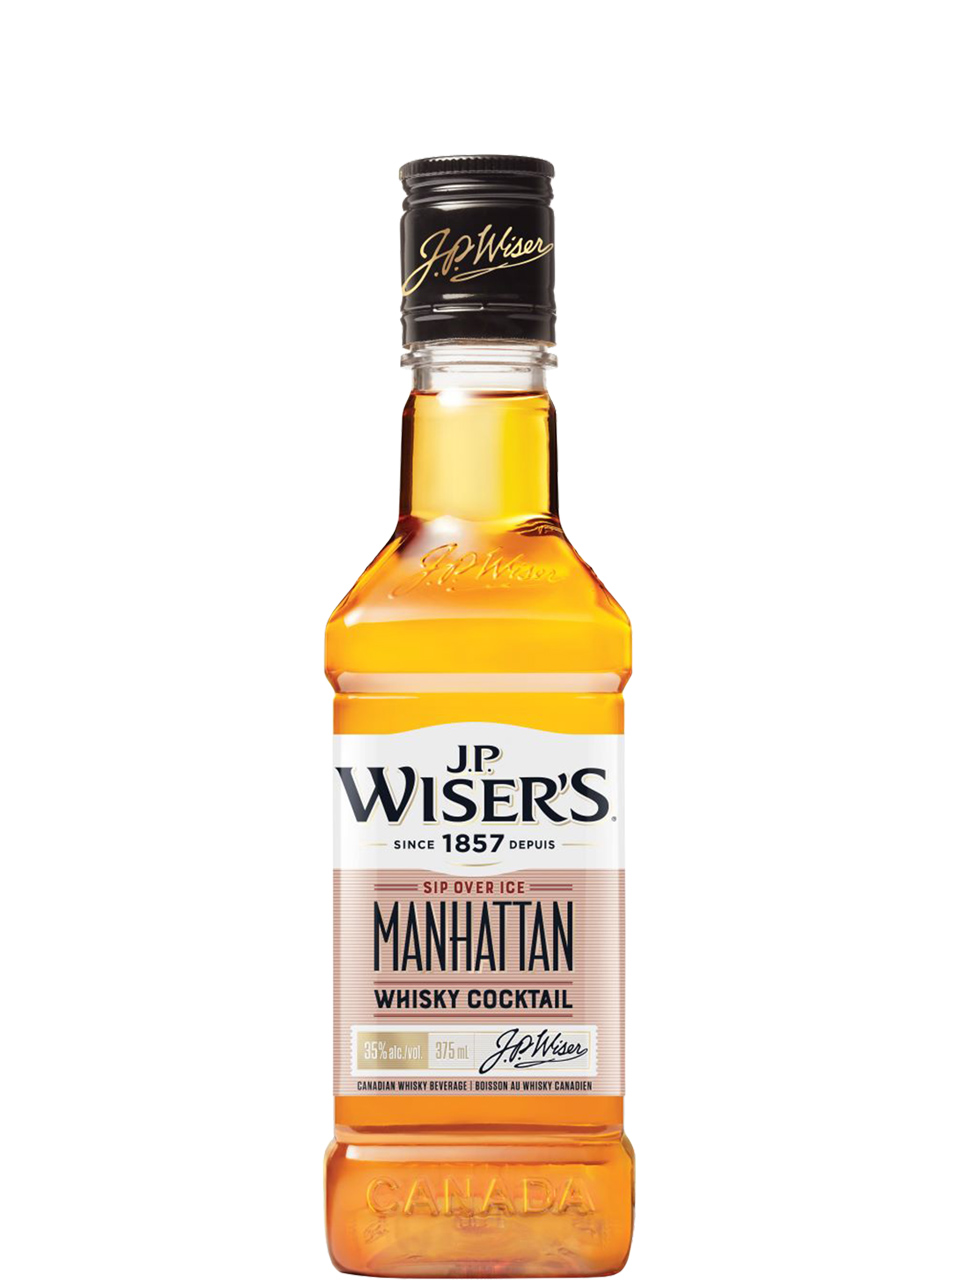 J.P. Wiser's Manhattan Whisky Cocktail